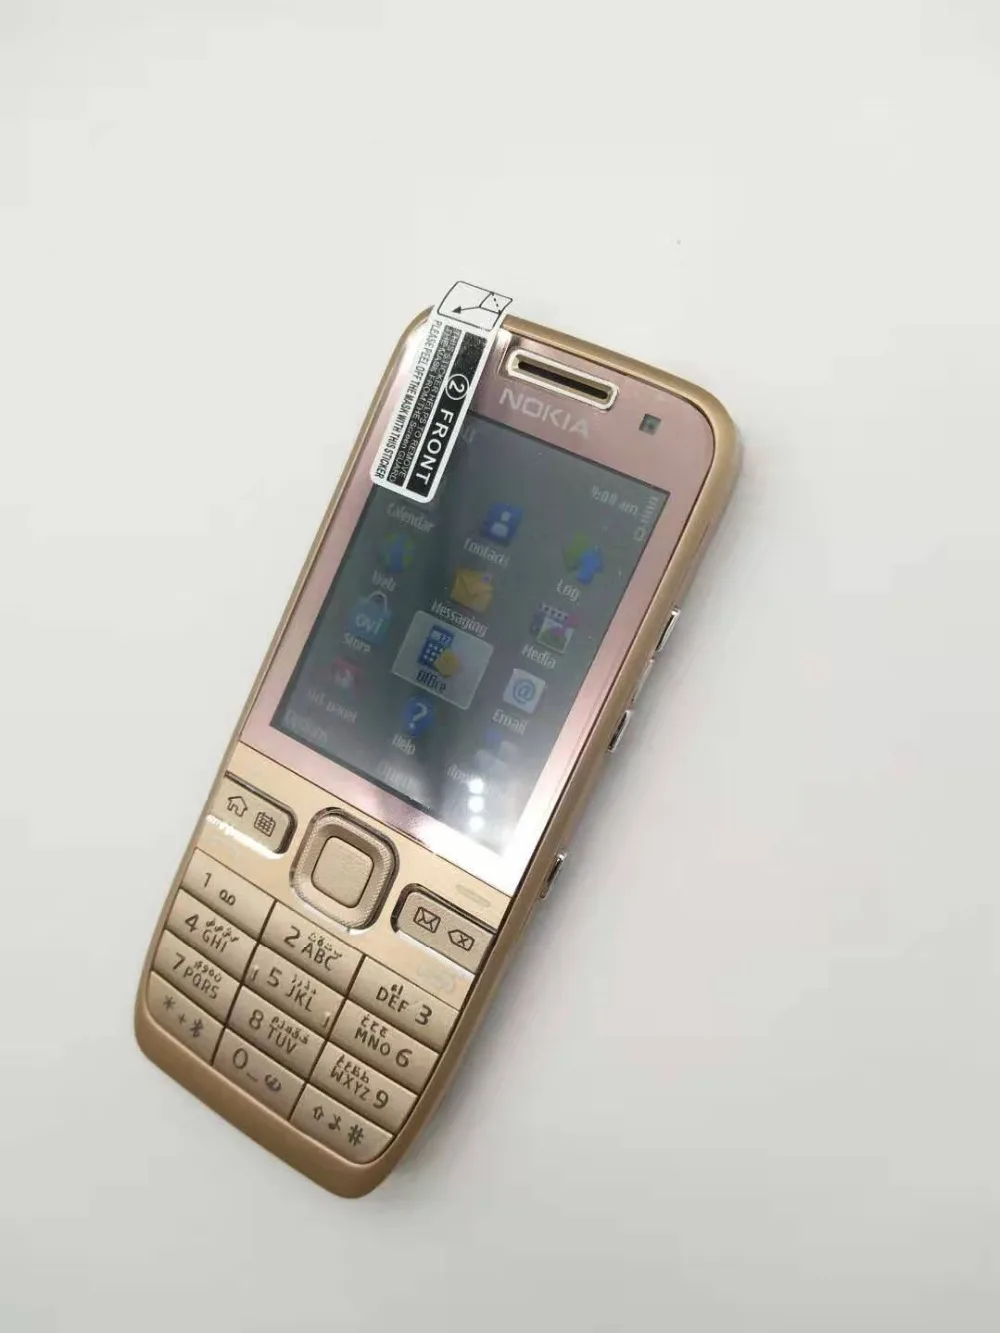 E52 оригинальный Nokia E52 WI-FI gps JAVA 3g разблокированный мобильный телефон с русской клавиатурой Восстановленное